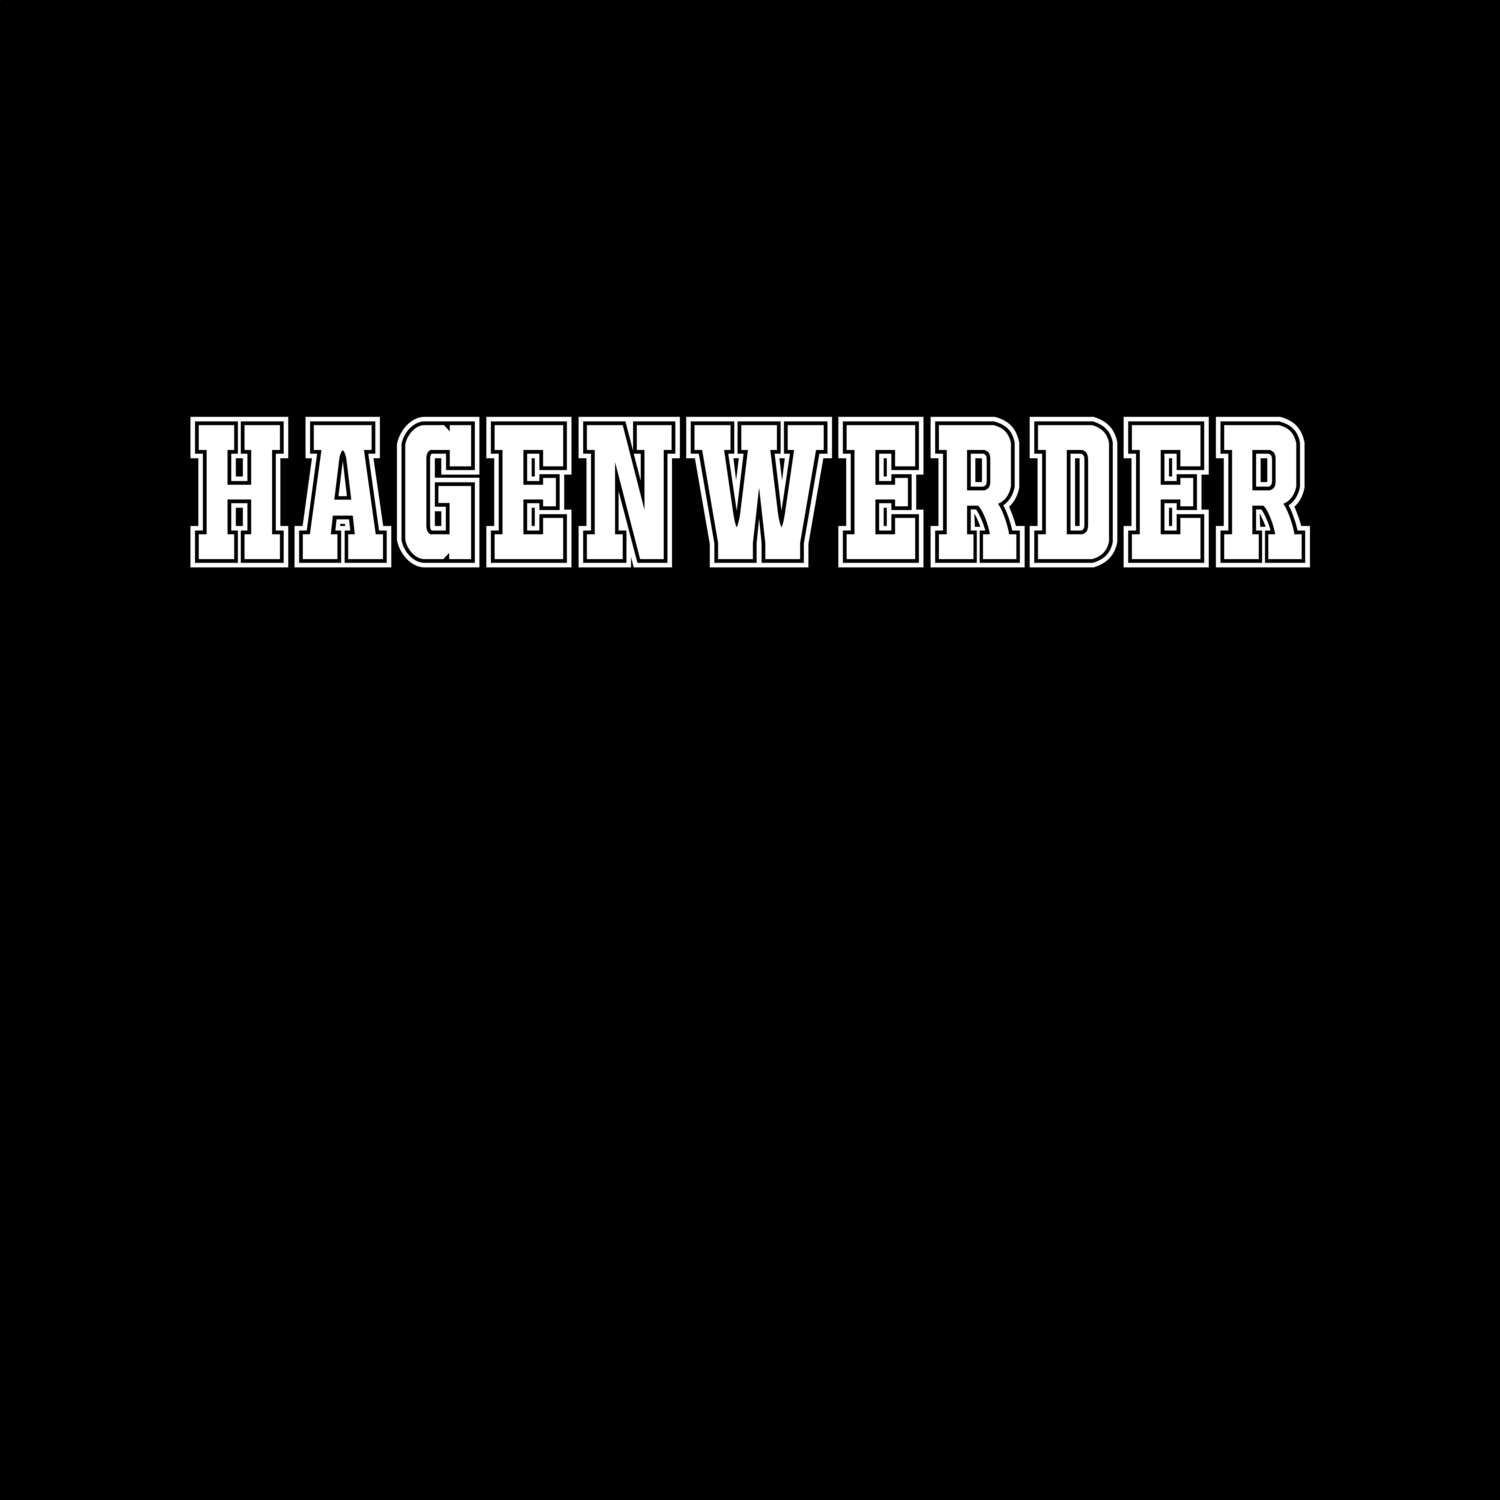 Hagenwerder T-Shirt »Classic«